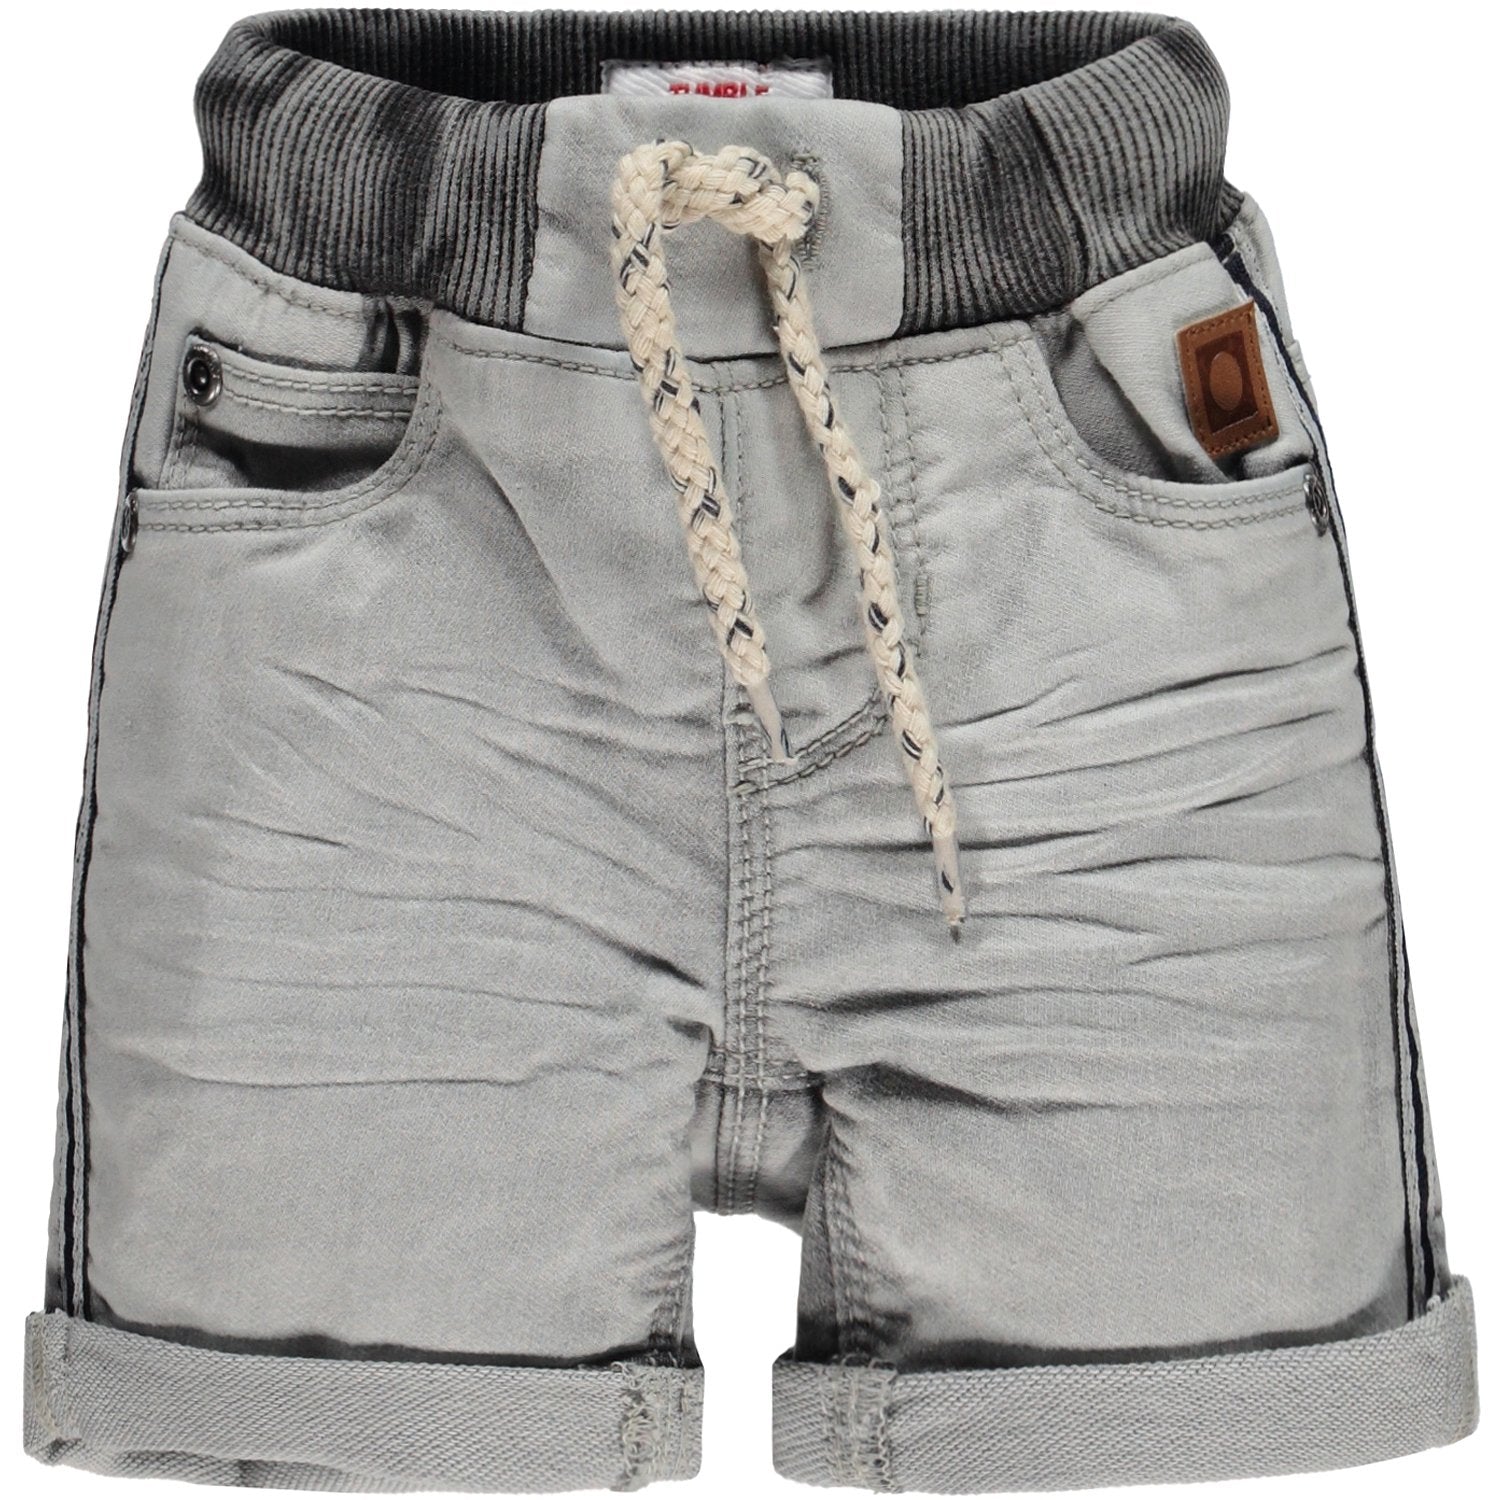 Baby Jongens Broek Jeans kort van Tumble 'n Dry in de kleur Denim grey in maat 86.